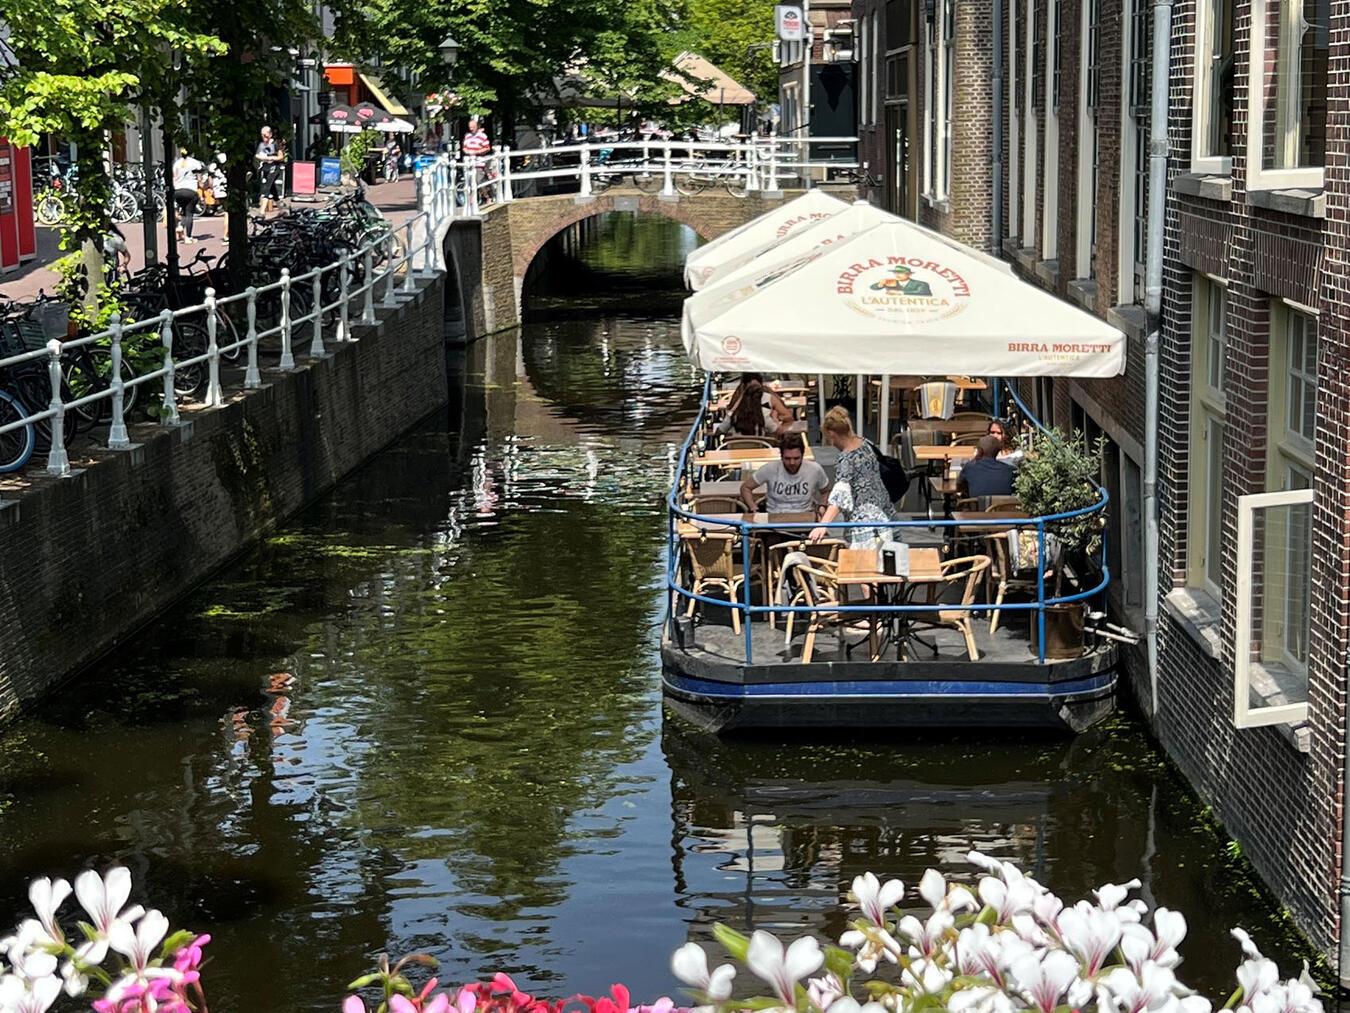 Malerische Grachten, prächtige Herrenhäuser und eine entspannte Atmosphäre zeichnen Delft aus.NN-Fotos: Andrea Kempkens